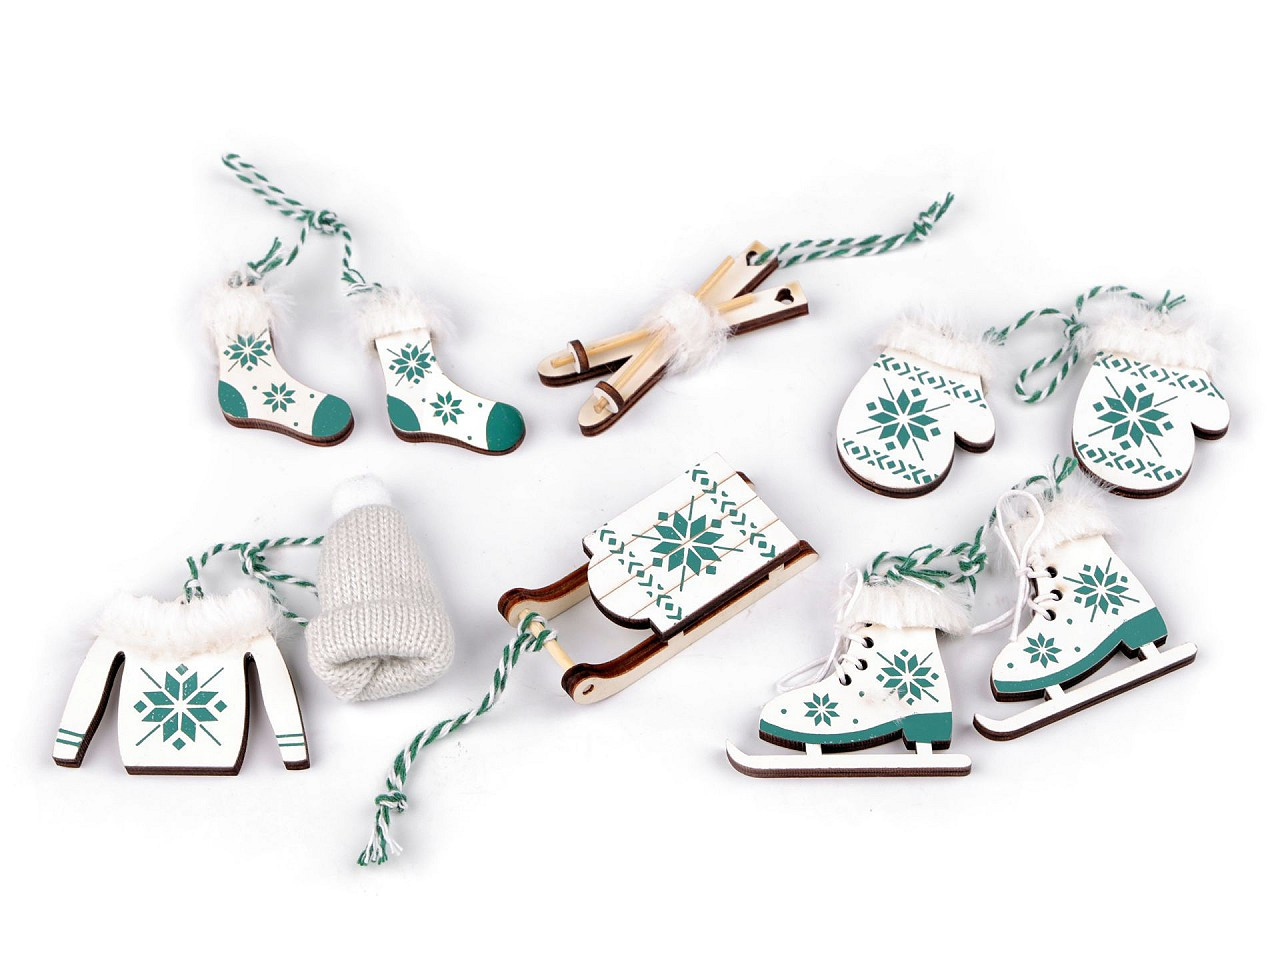 Vánoční dekorace - sáňky, lyže, brusle, čepice, bunda, rukavice, ponožky, barva 3 bílá zelená